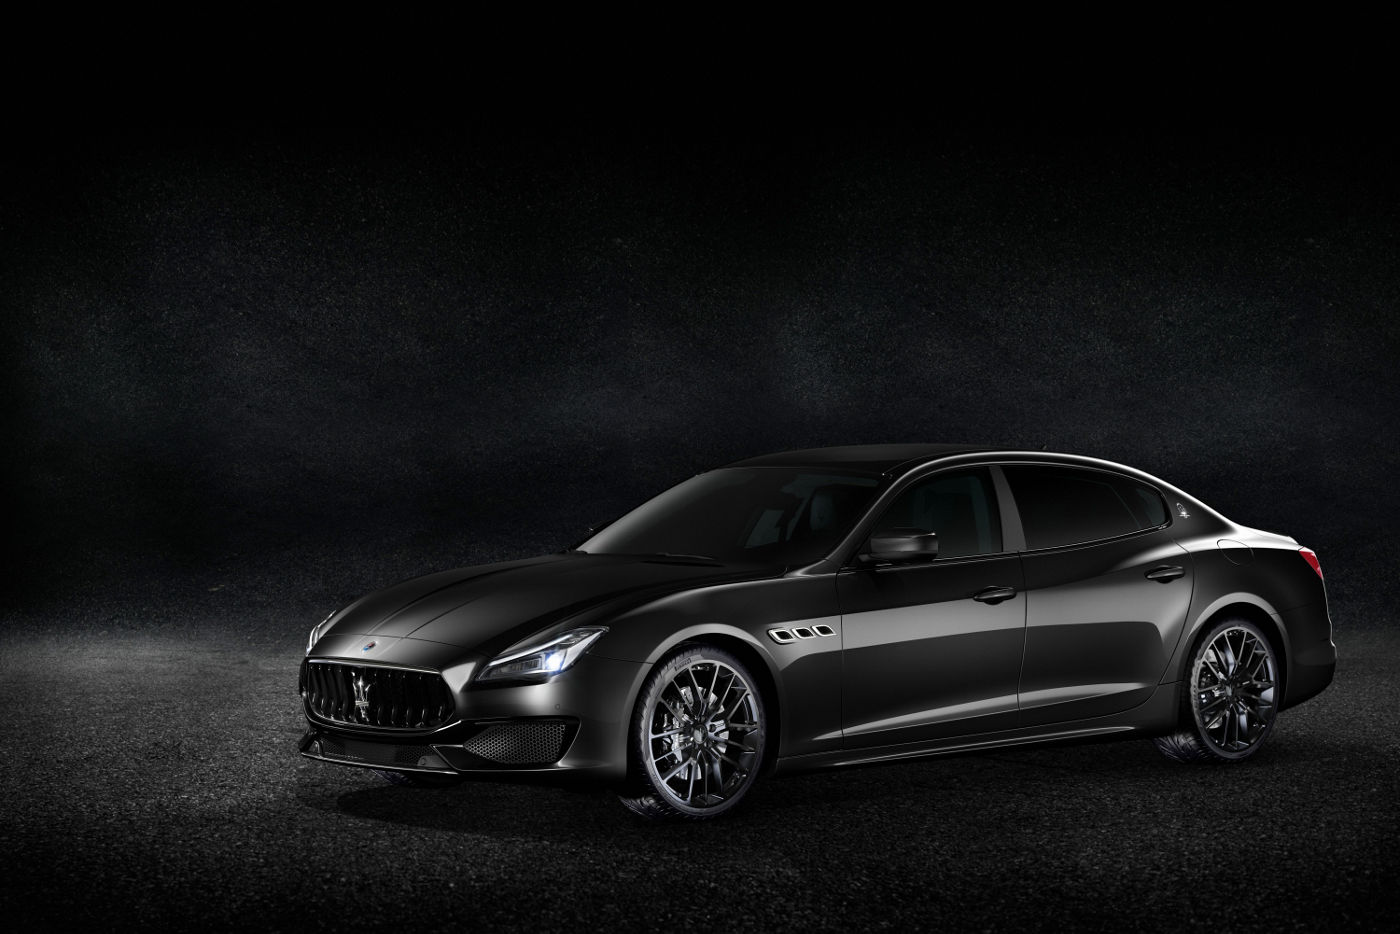 Maserati Quattroporte - Nerissimo Edition 2018